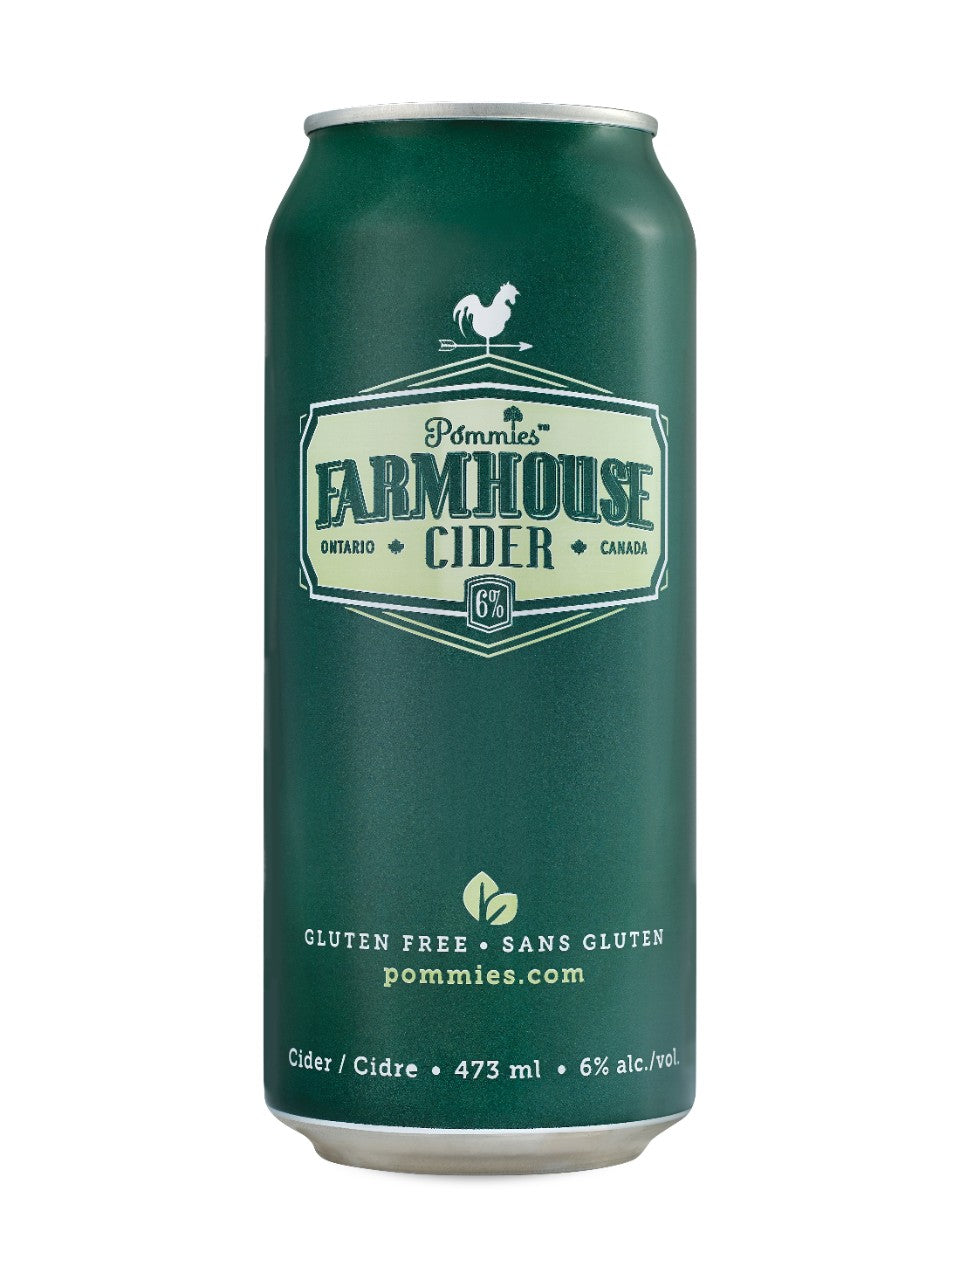 Pommies Farmhouse Cider 473 mL can